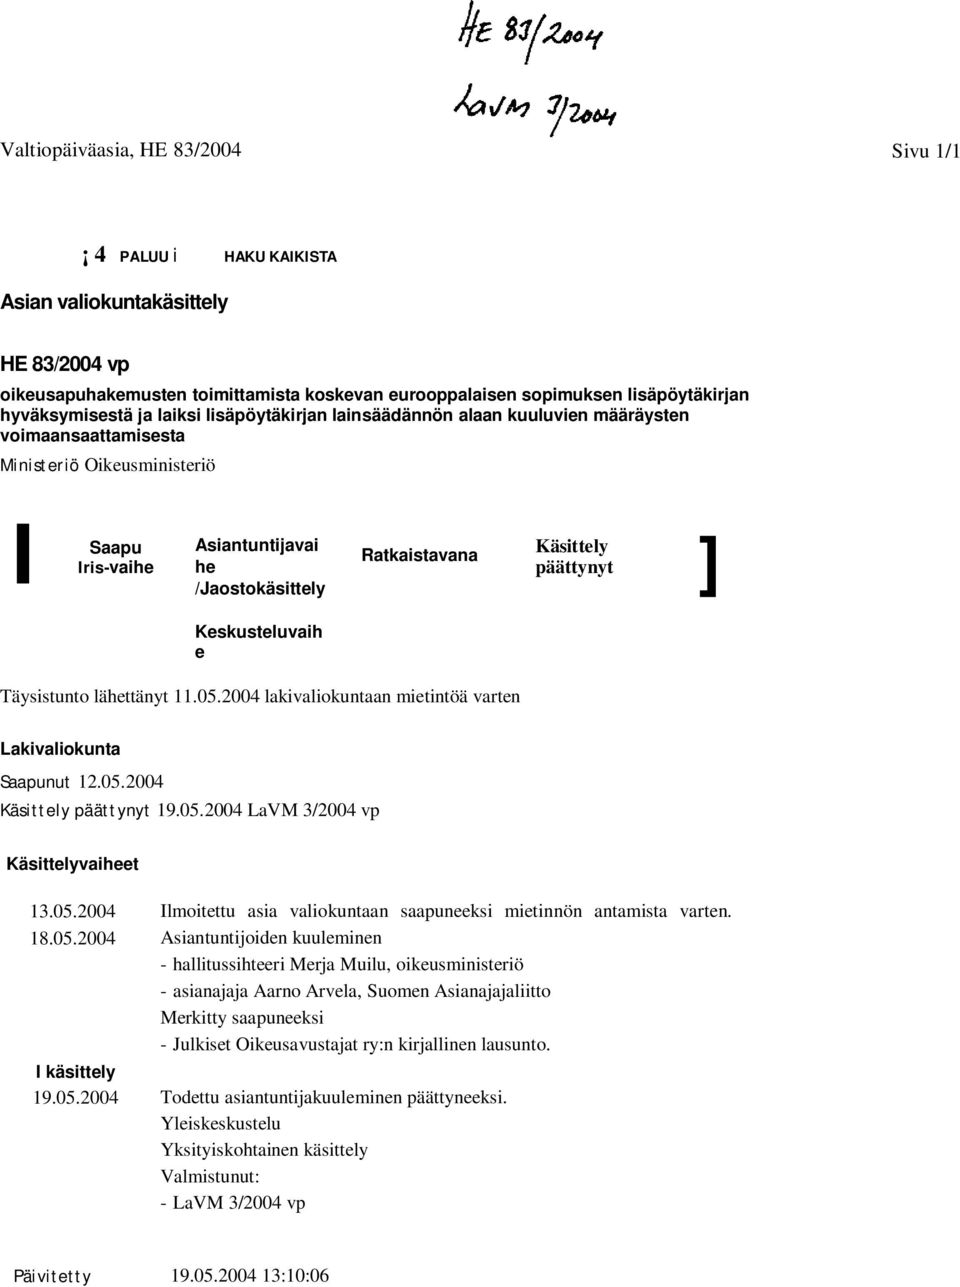 Käsittely ] päättynyt Keskusteluvaih e Täysistunto lähettänyt 11.05.2004 lakivaliokuntaan mietintöä varten Lakivaliokunta Saapunut 12.05.2004 Käsittely päättynyt 19.05.2004 LaVM 3/2004 vp Käsittelyvaiheet 13.